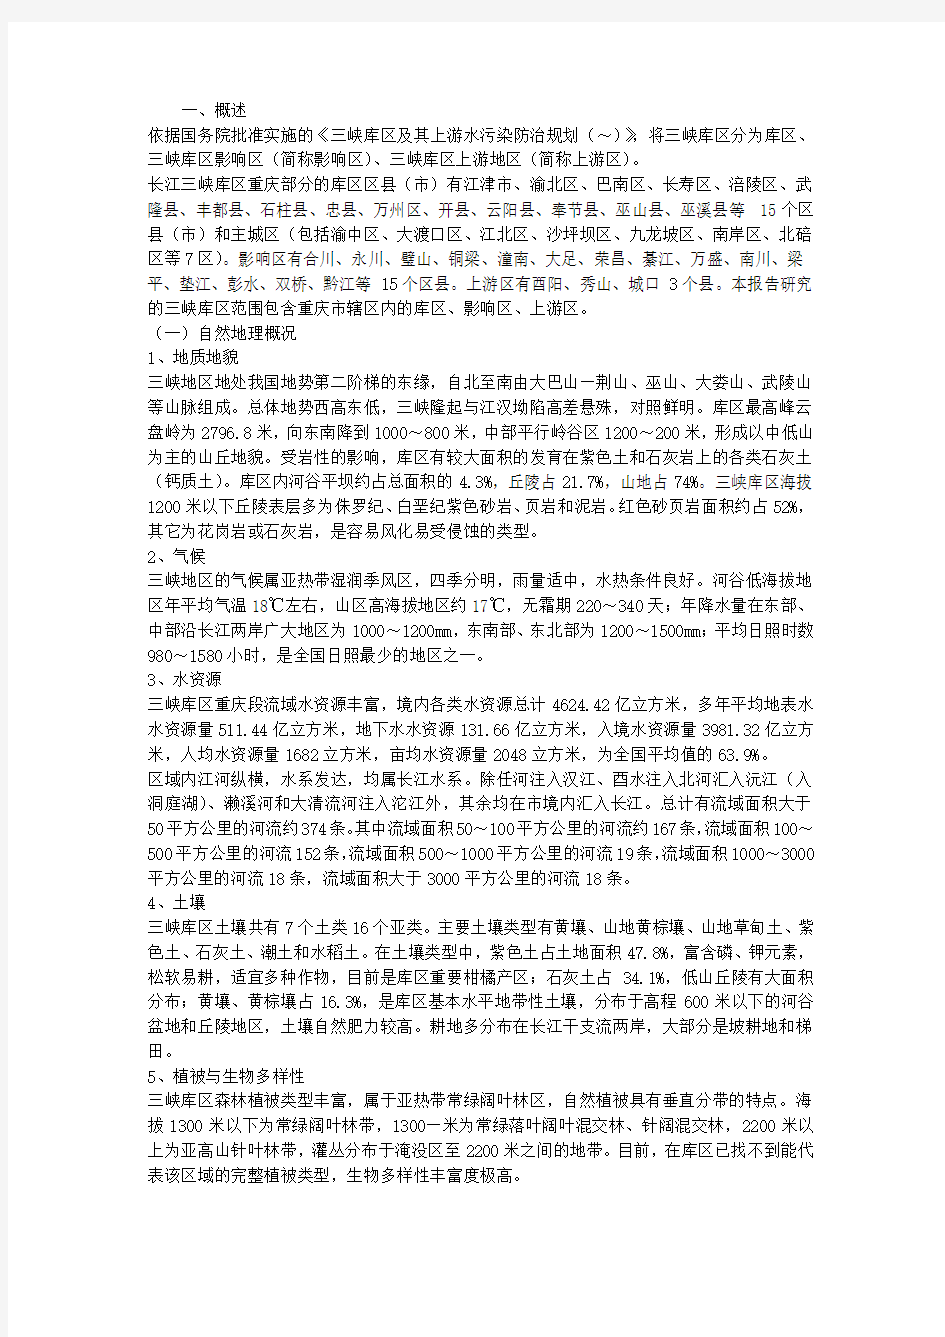 长江三峡生态环境保护和建设情况调研报告